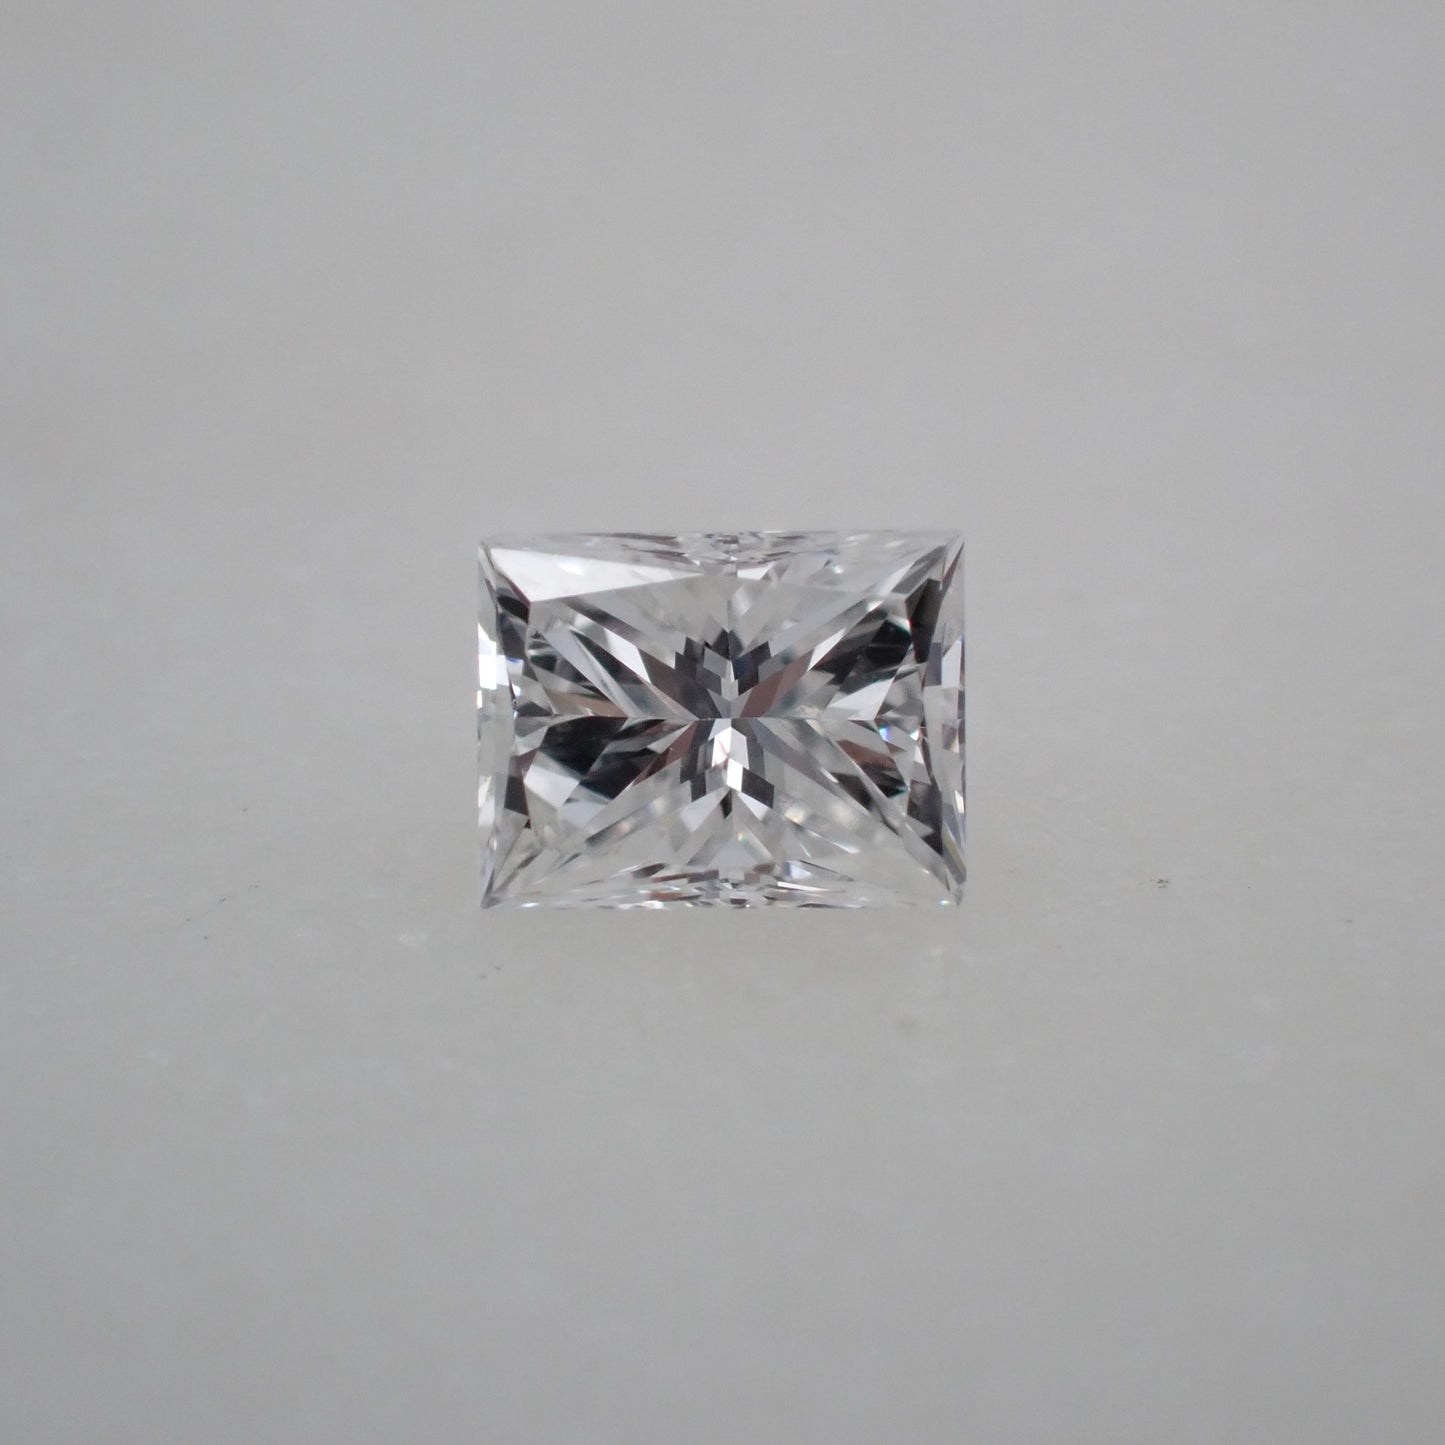 Recycled Diamond - Rectangular Princess Cut - 0.26ct